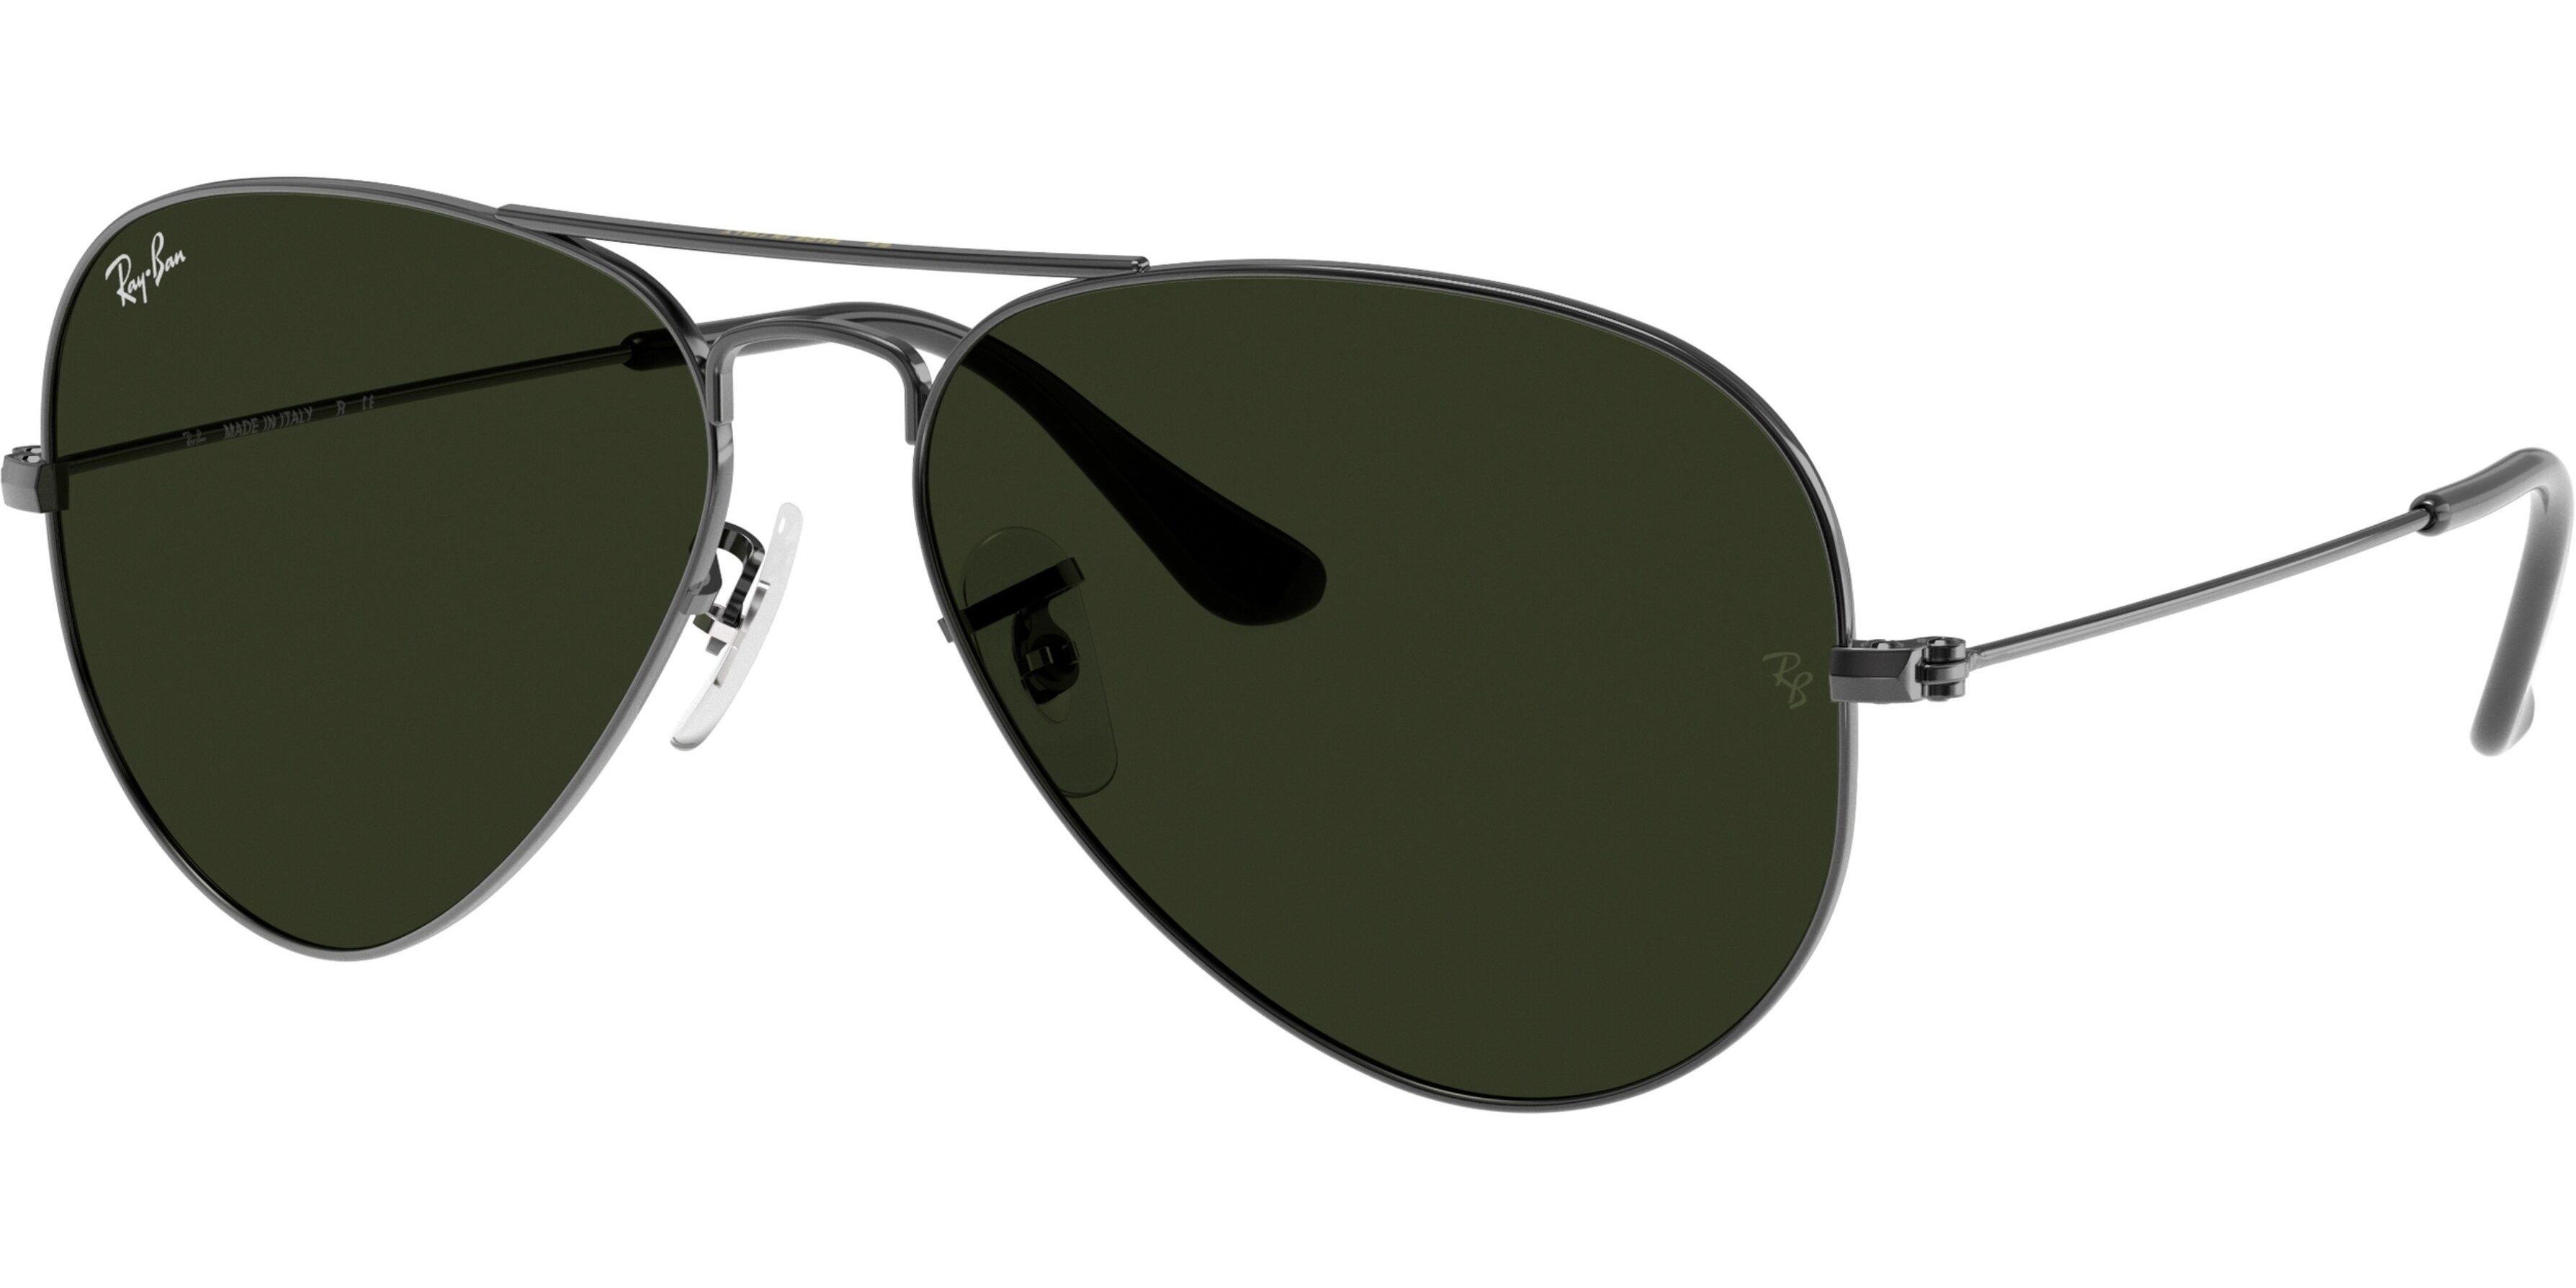 Sluneční brýle Ray-Ban® model 3025, barva obruby stříbrná lesk, čočka zelená, kód barevné varianty W0879. 